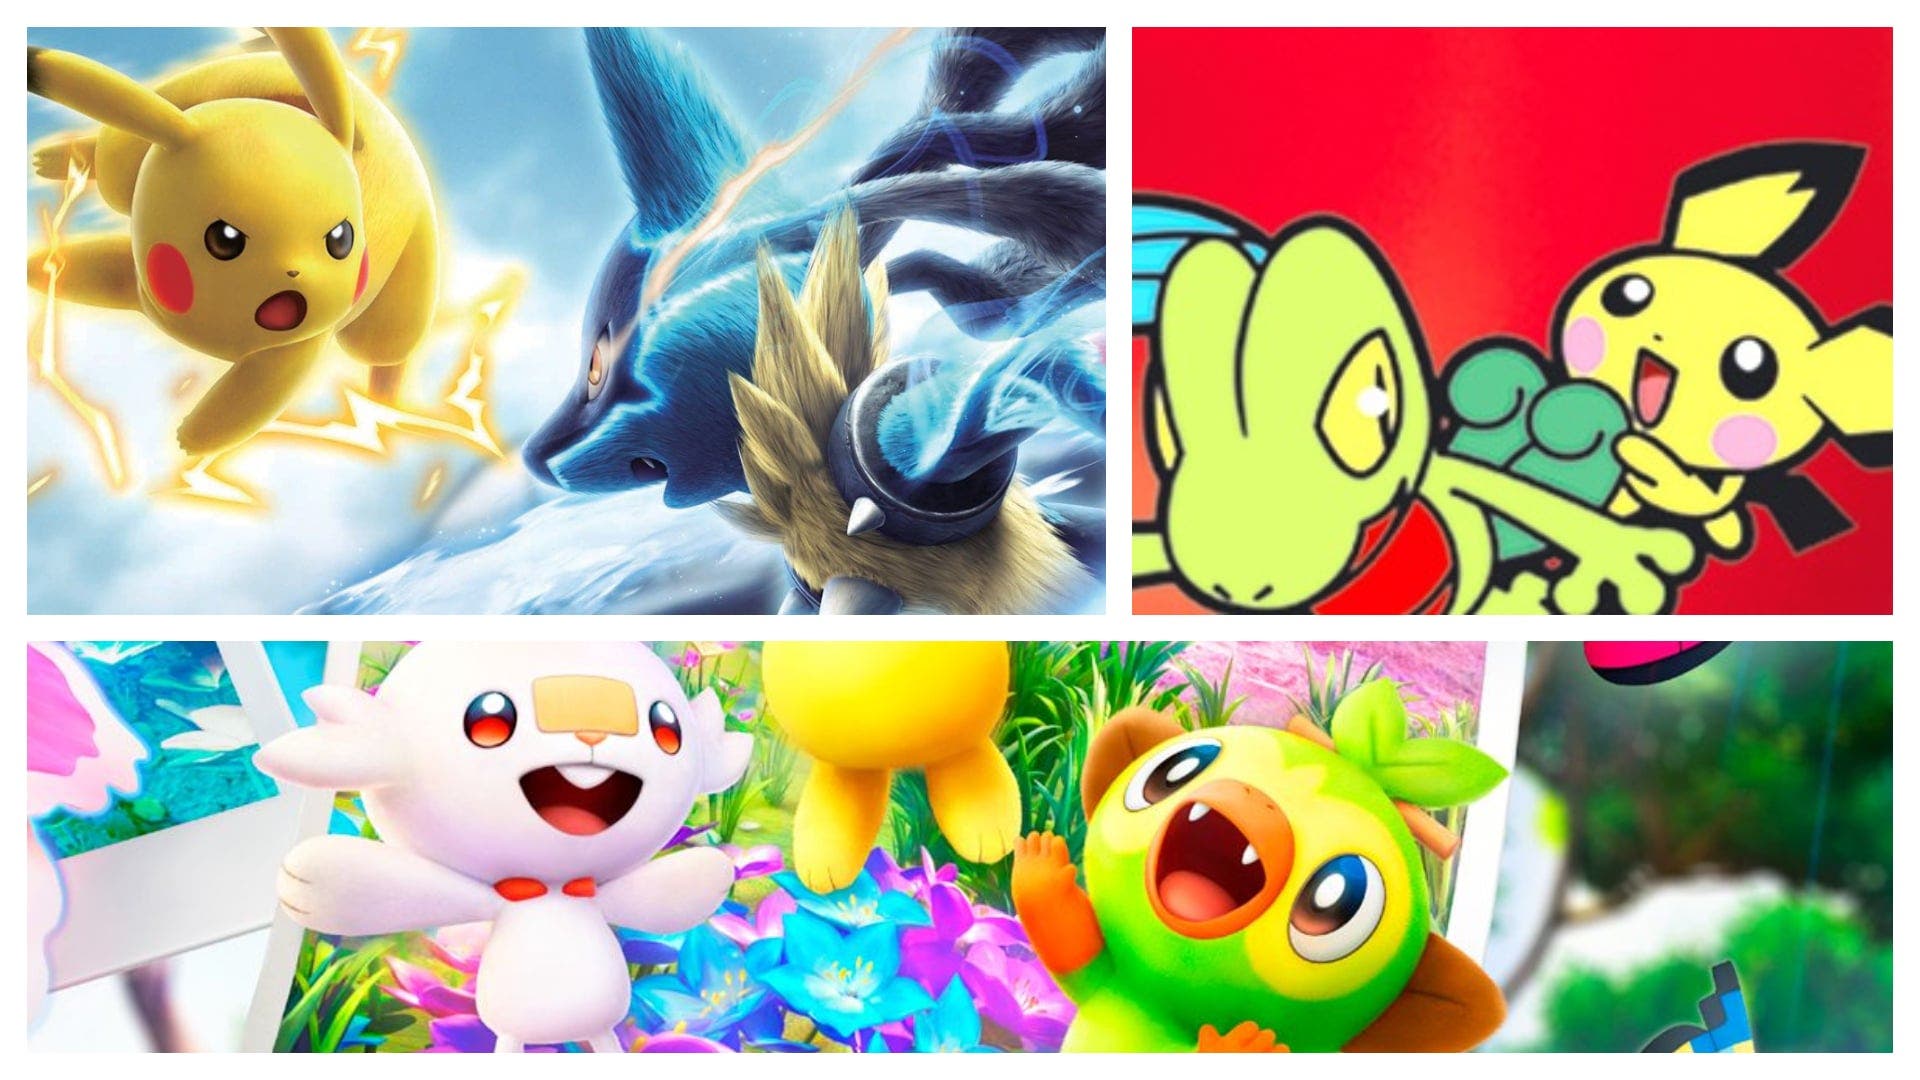 Los 10 mejores spin-off de Pokémon según Metacritic